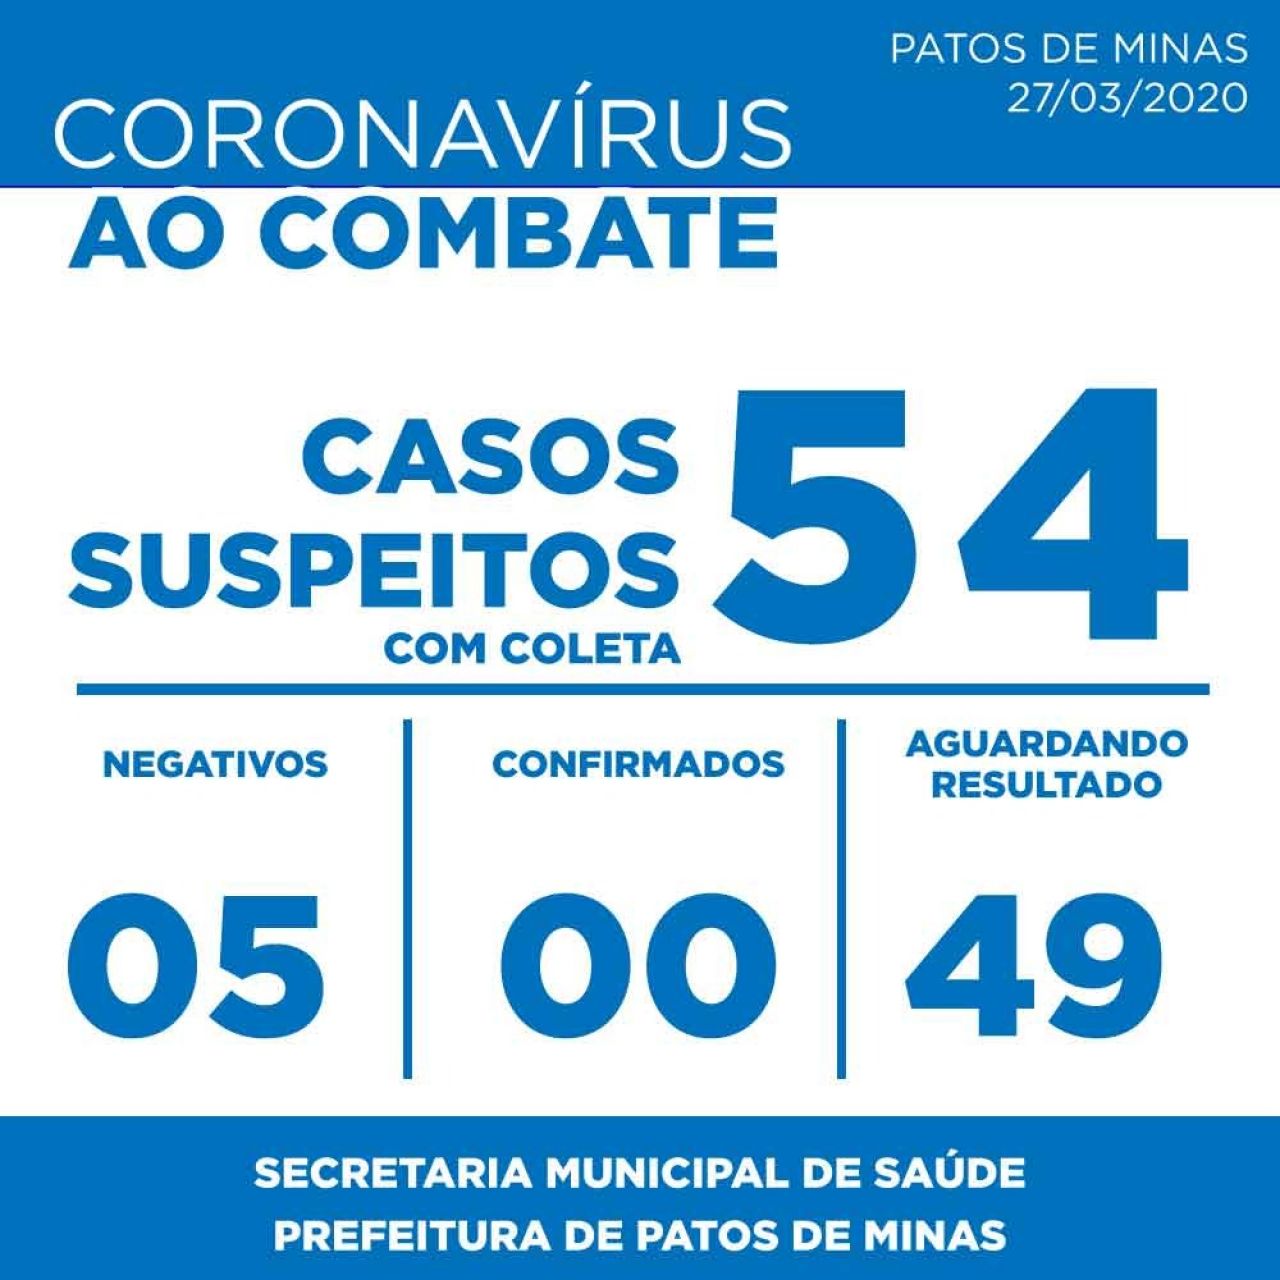 Casos suspeitos de Coronavírus em Patos de Minas saltam de 34 para 54 nas últimas 24 horas